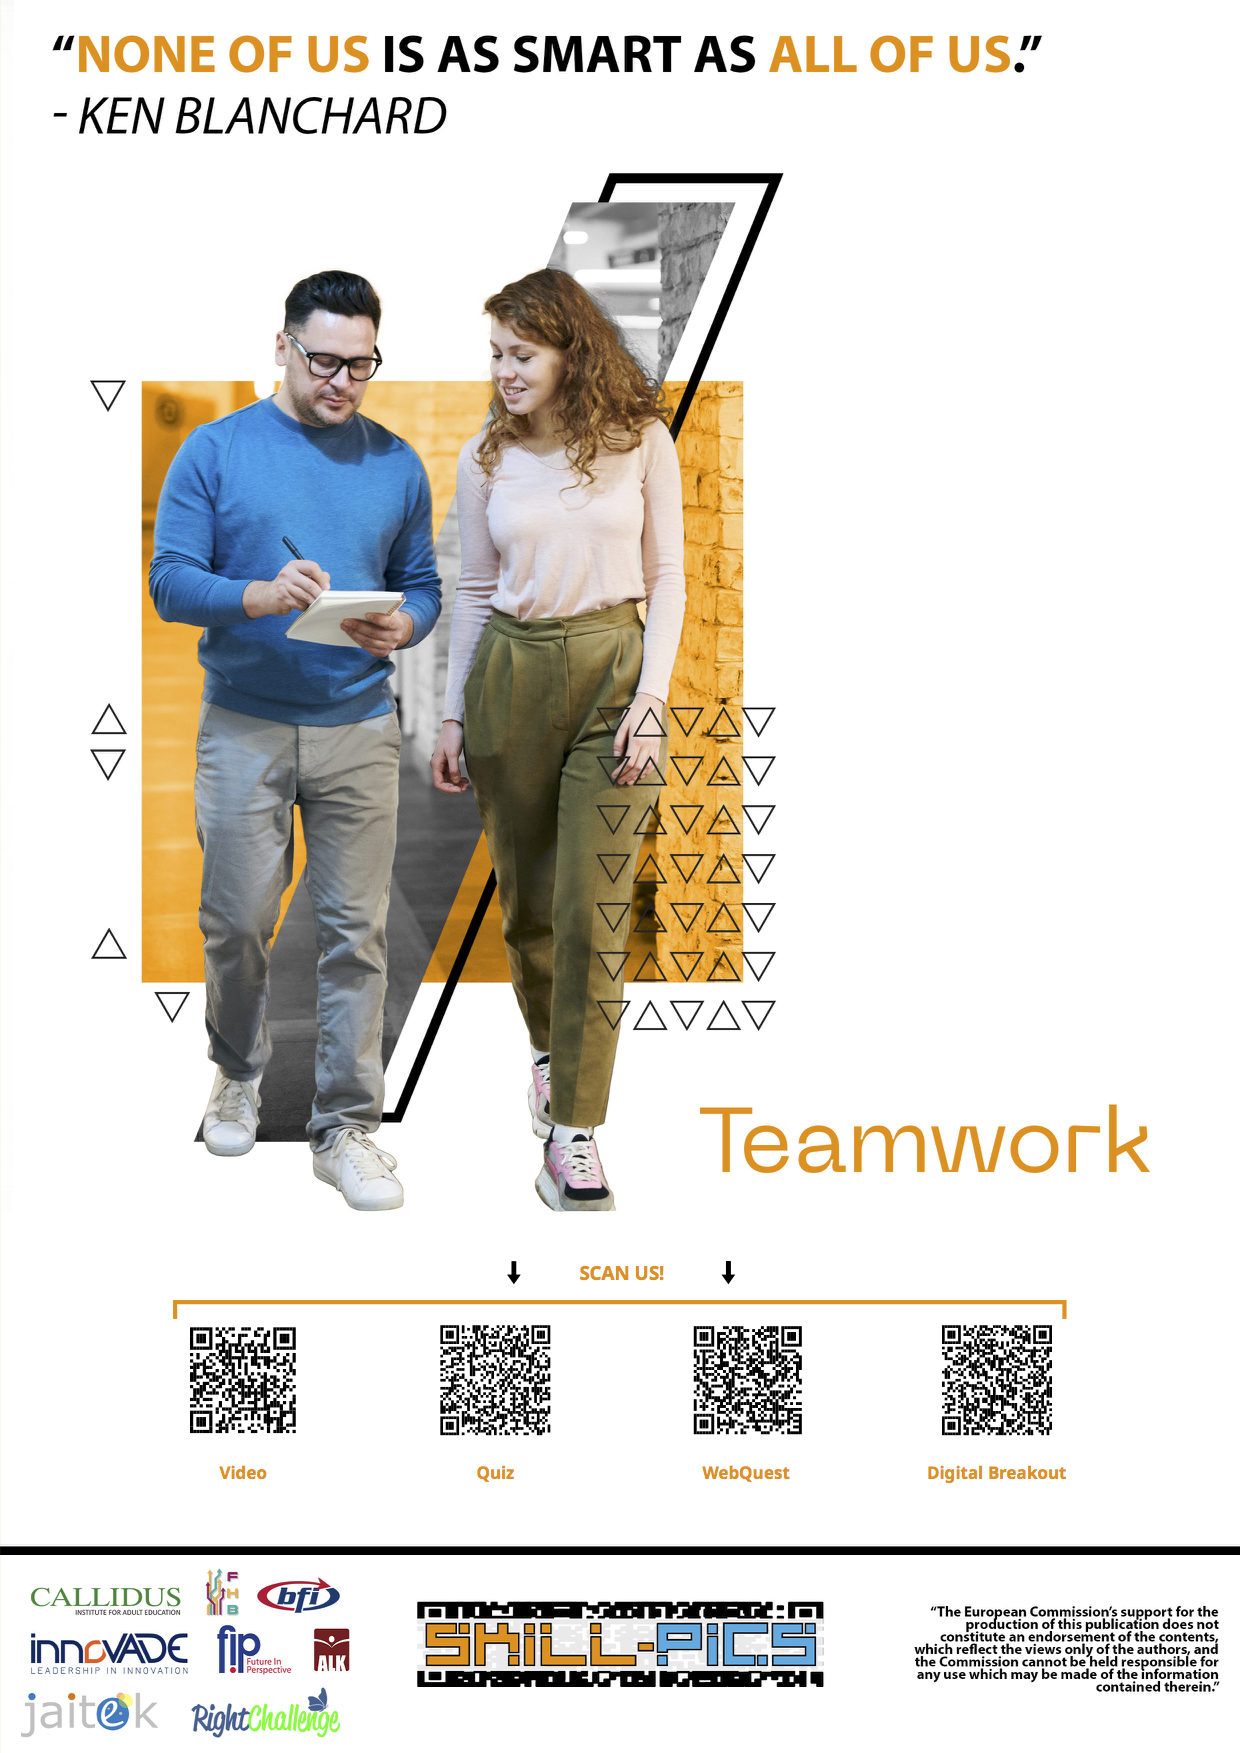 Teamwork and Collaboration (IG2)